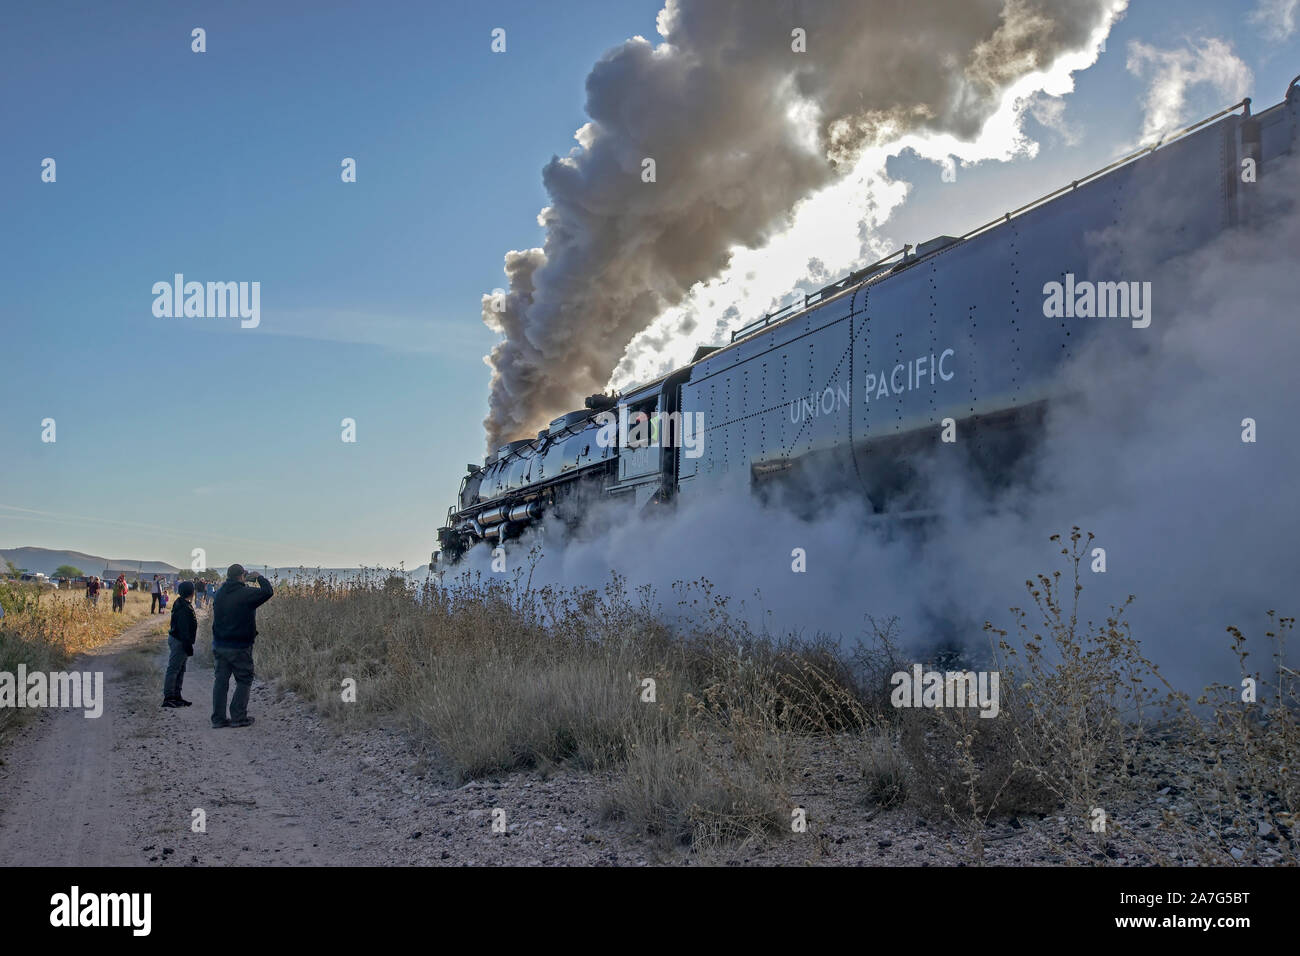 La celebración del 150 aniversario del ferrocarril transcontinental, Union Pacific Big Boy la histórica locomotora a vapor nº 4014 está realizando una gira por Estados Unidos. Foto de stock